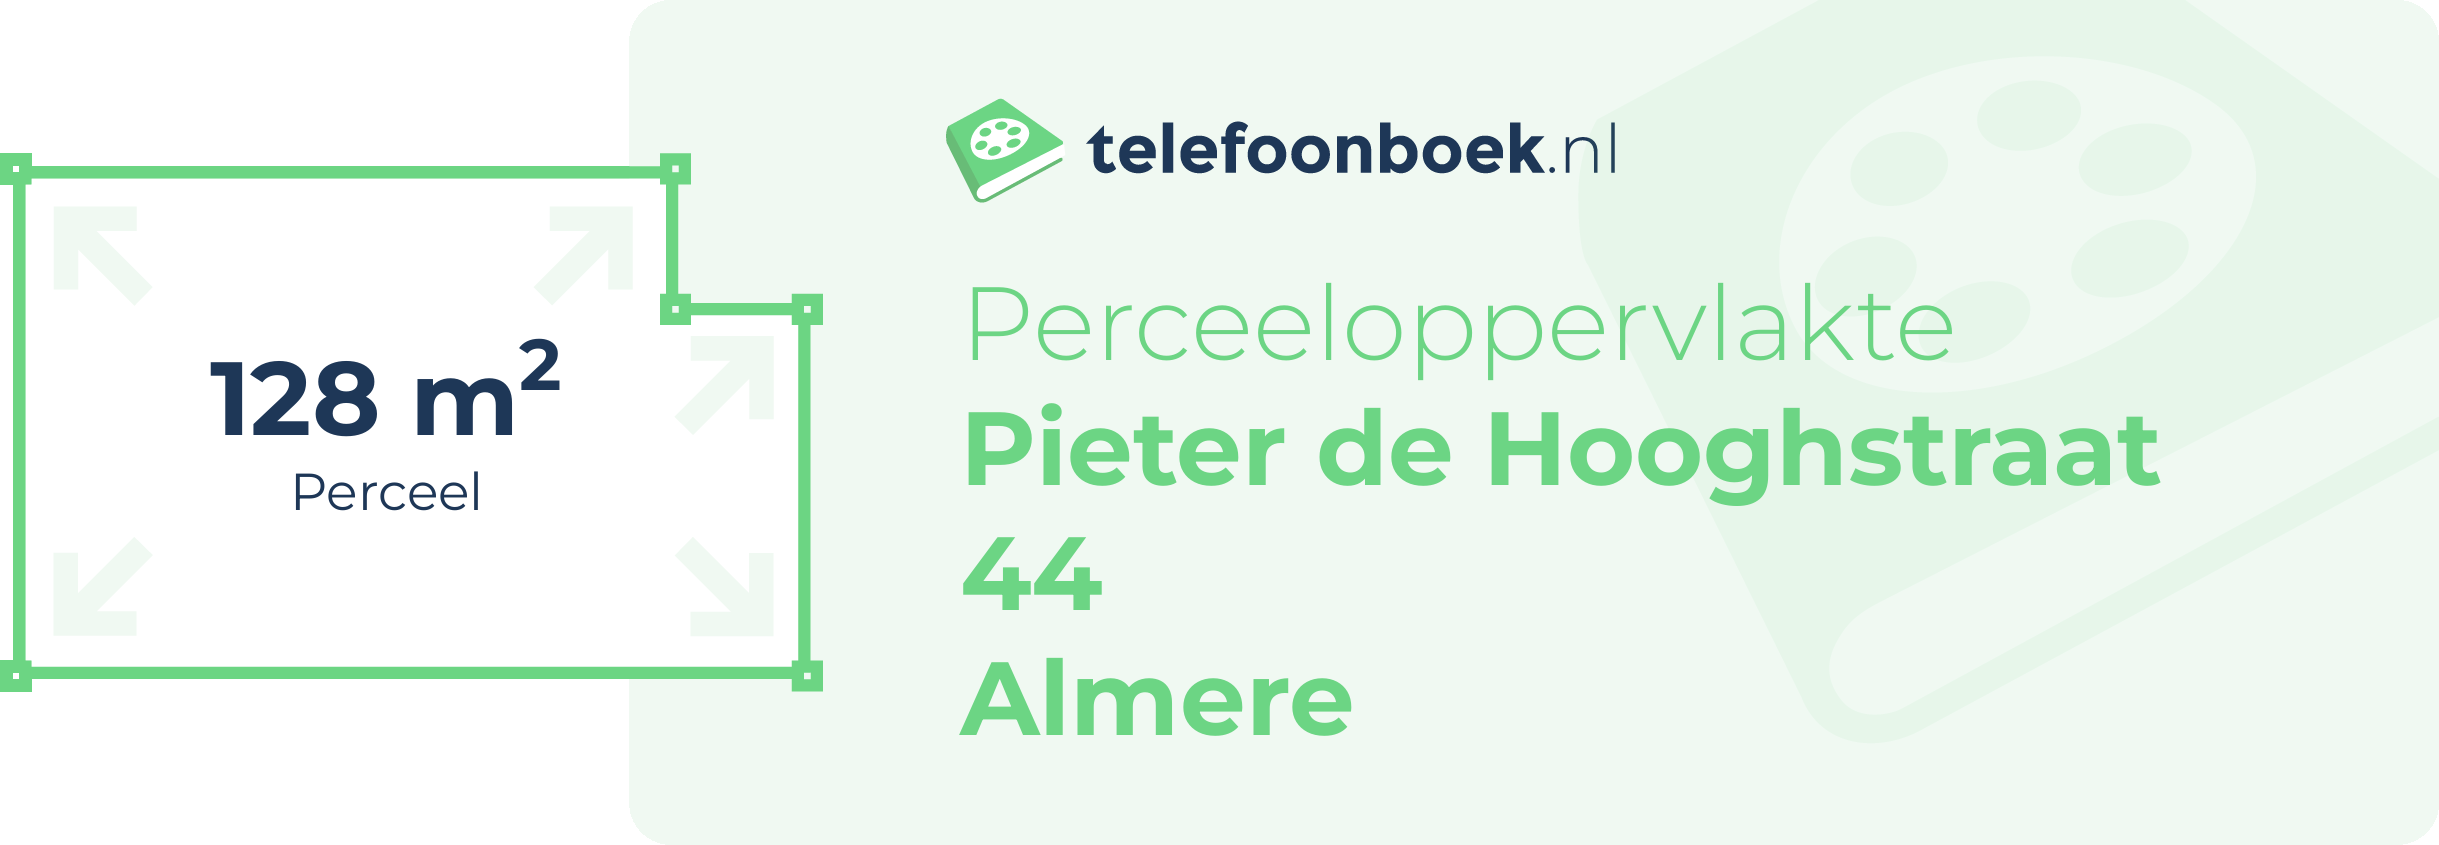 Perceeloppervlakte Pieter De Hooghstraat 44 Almere